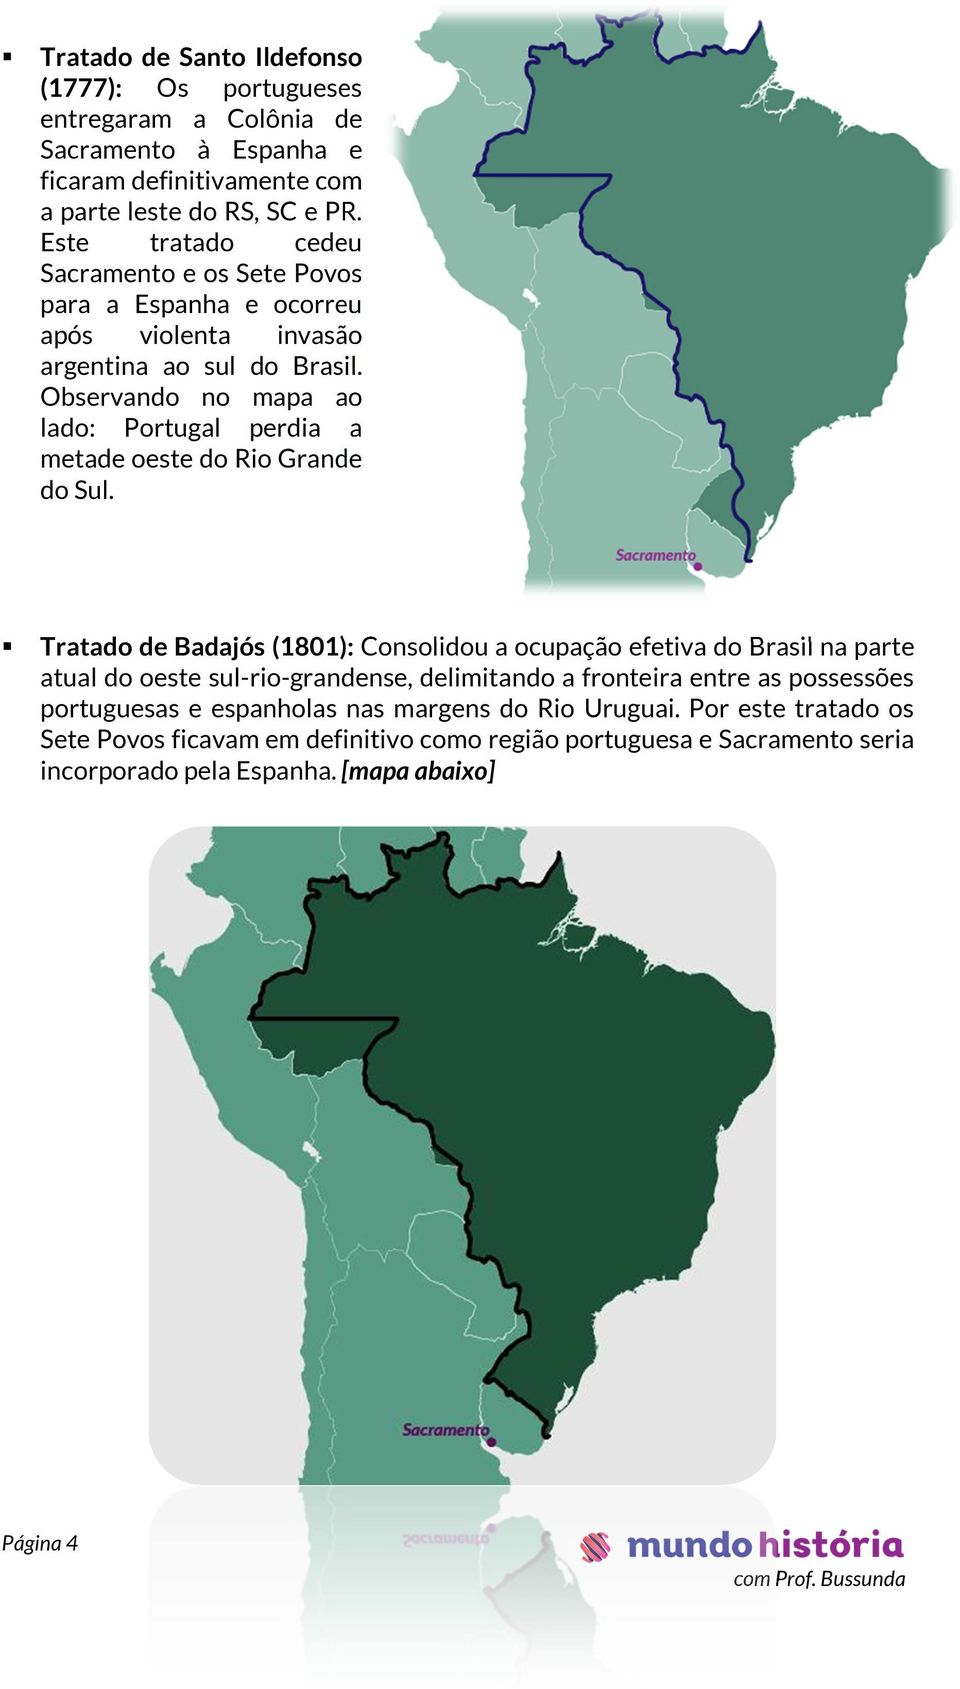 Observando no mapa ao lado: Portugal perdia a metade oeste do Rio Grande do Sul.